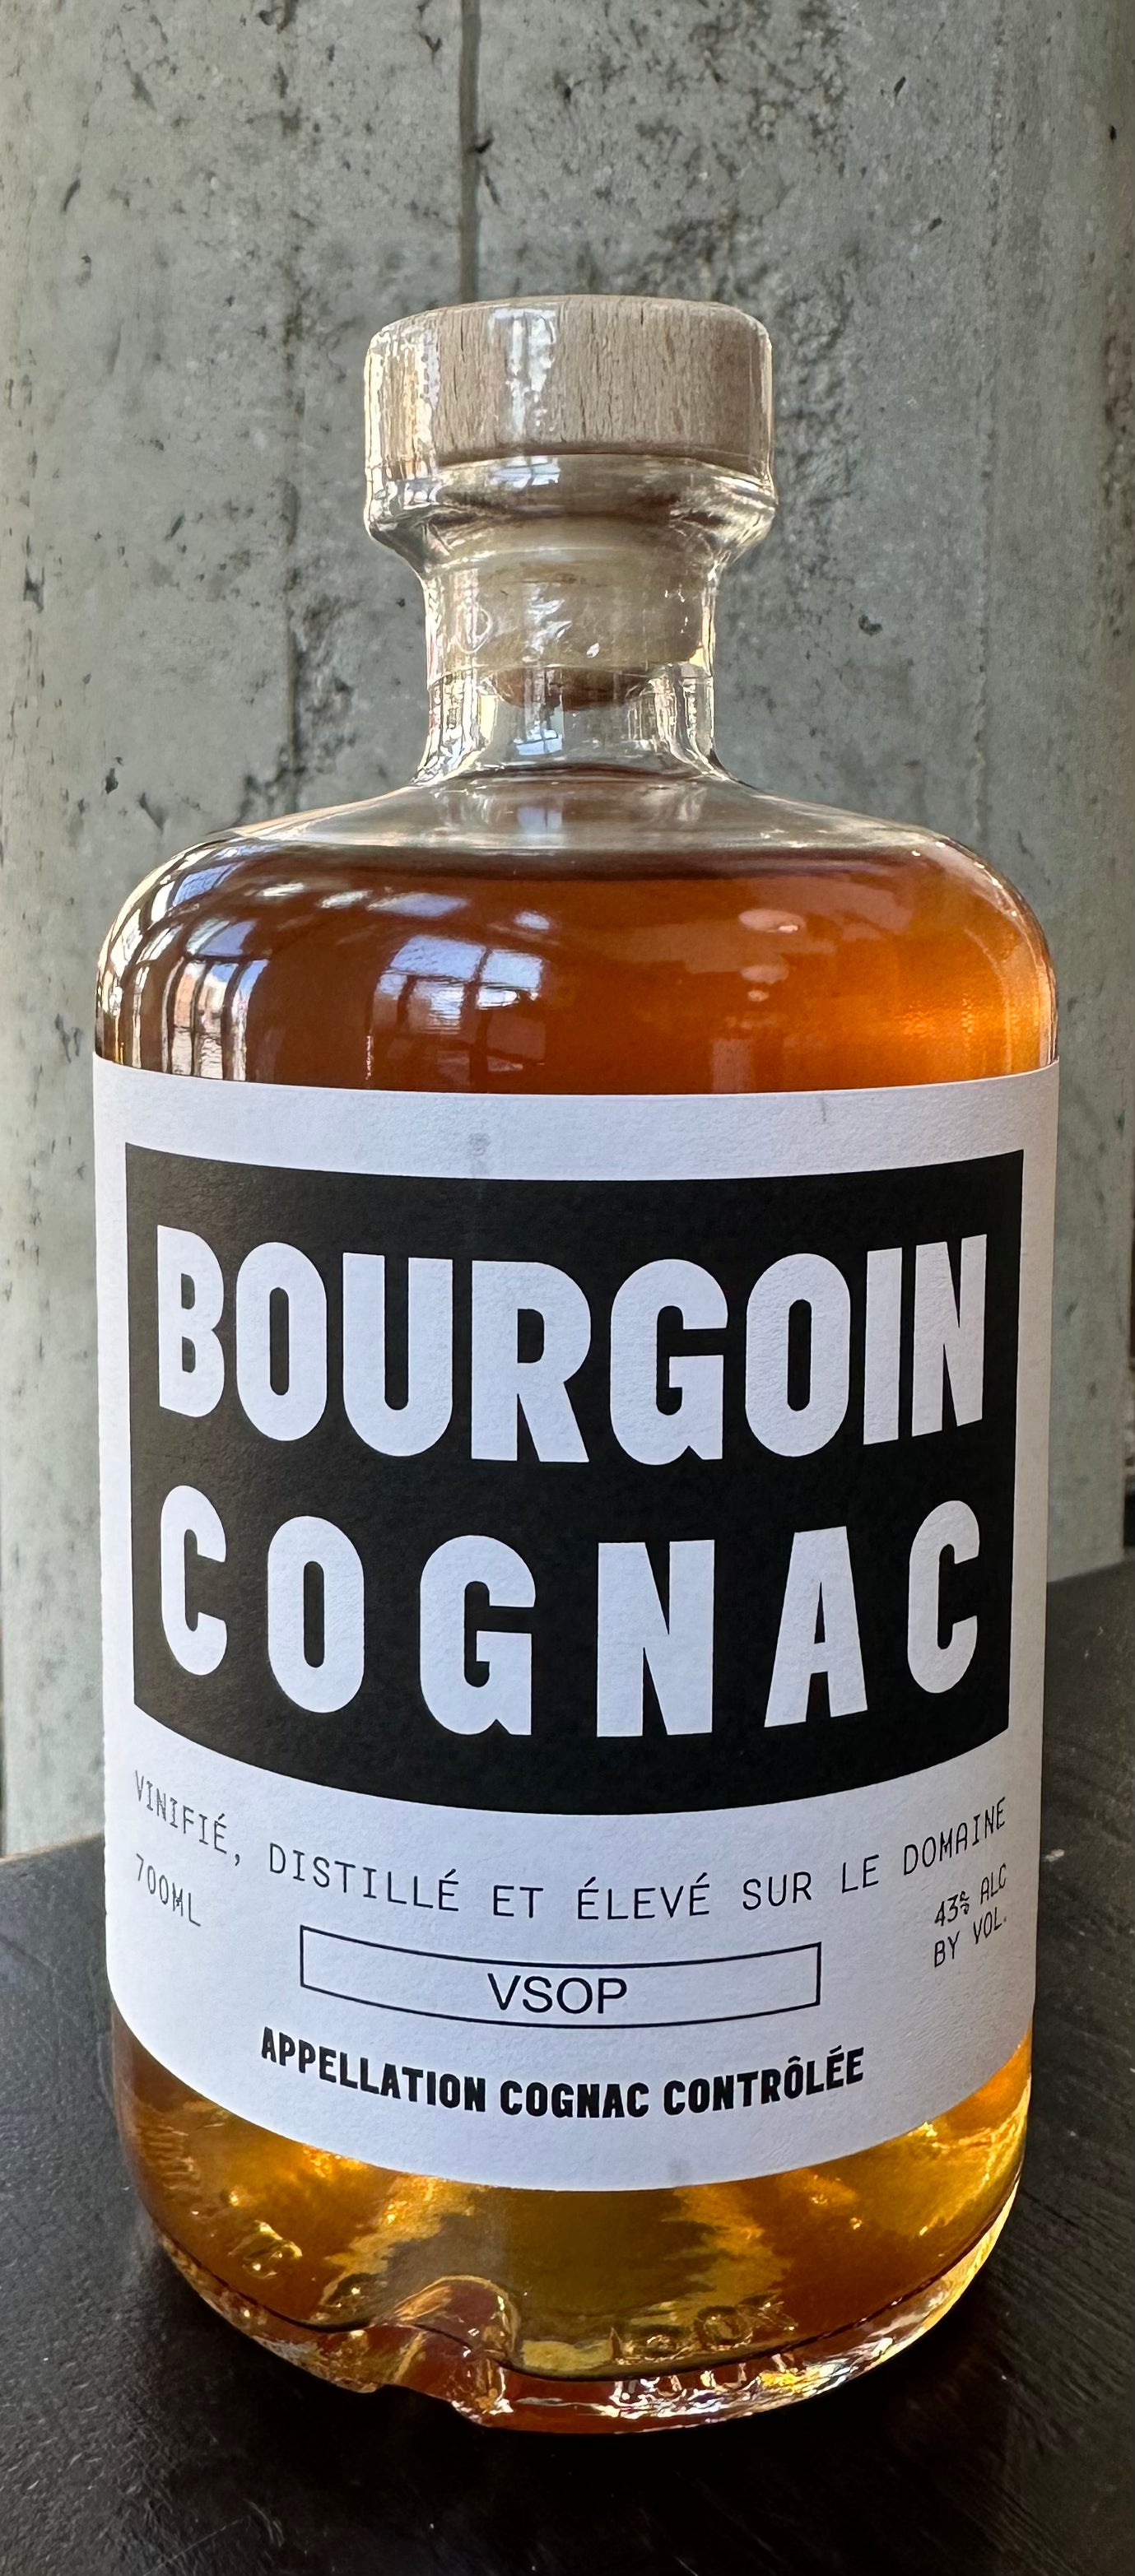 Bourgoin Cognac VSOP